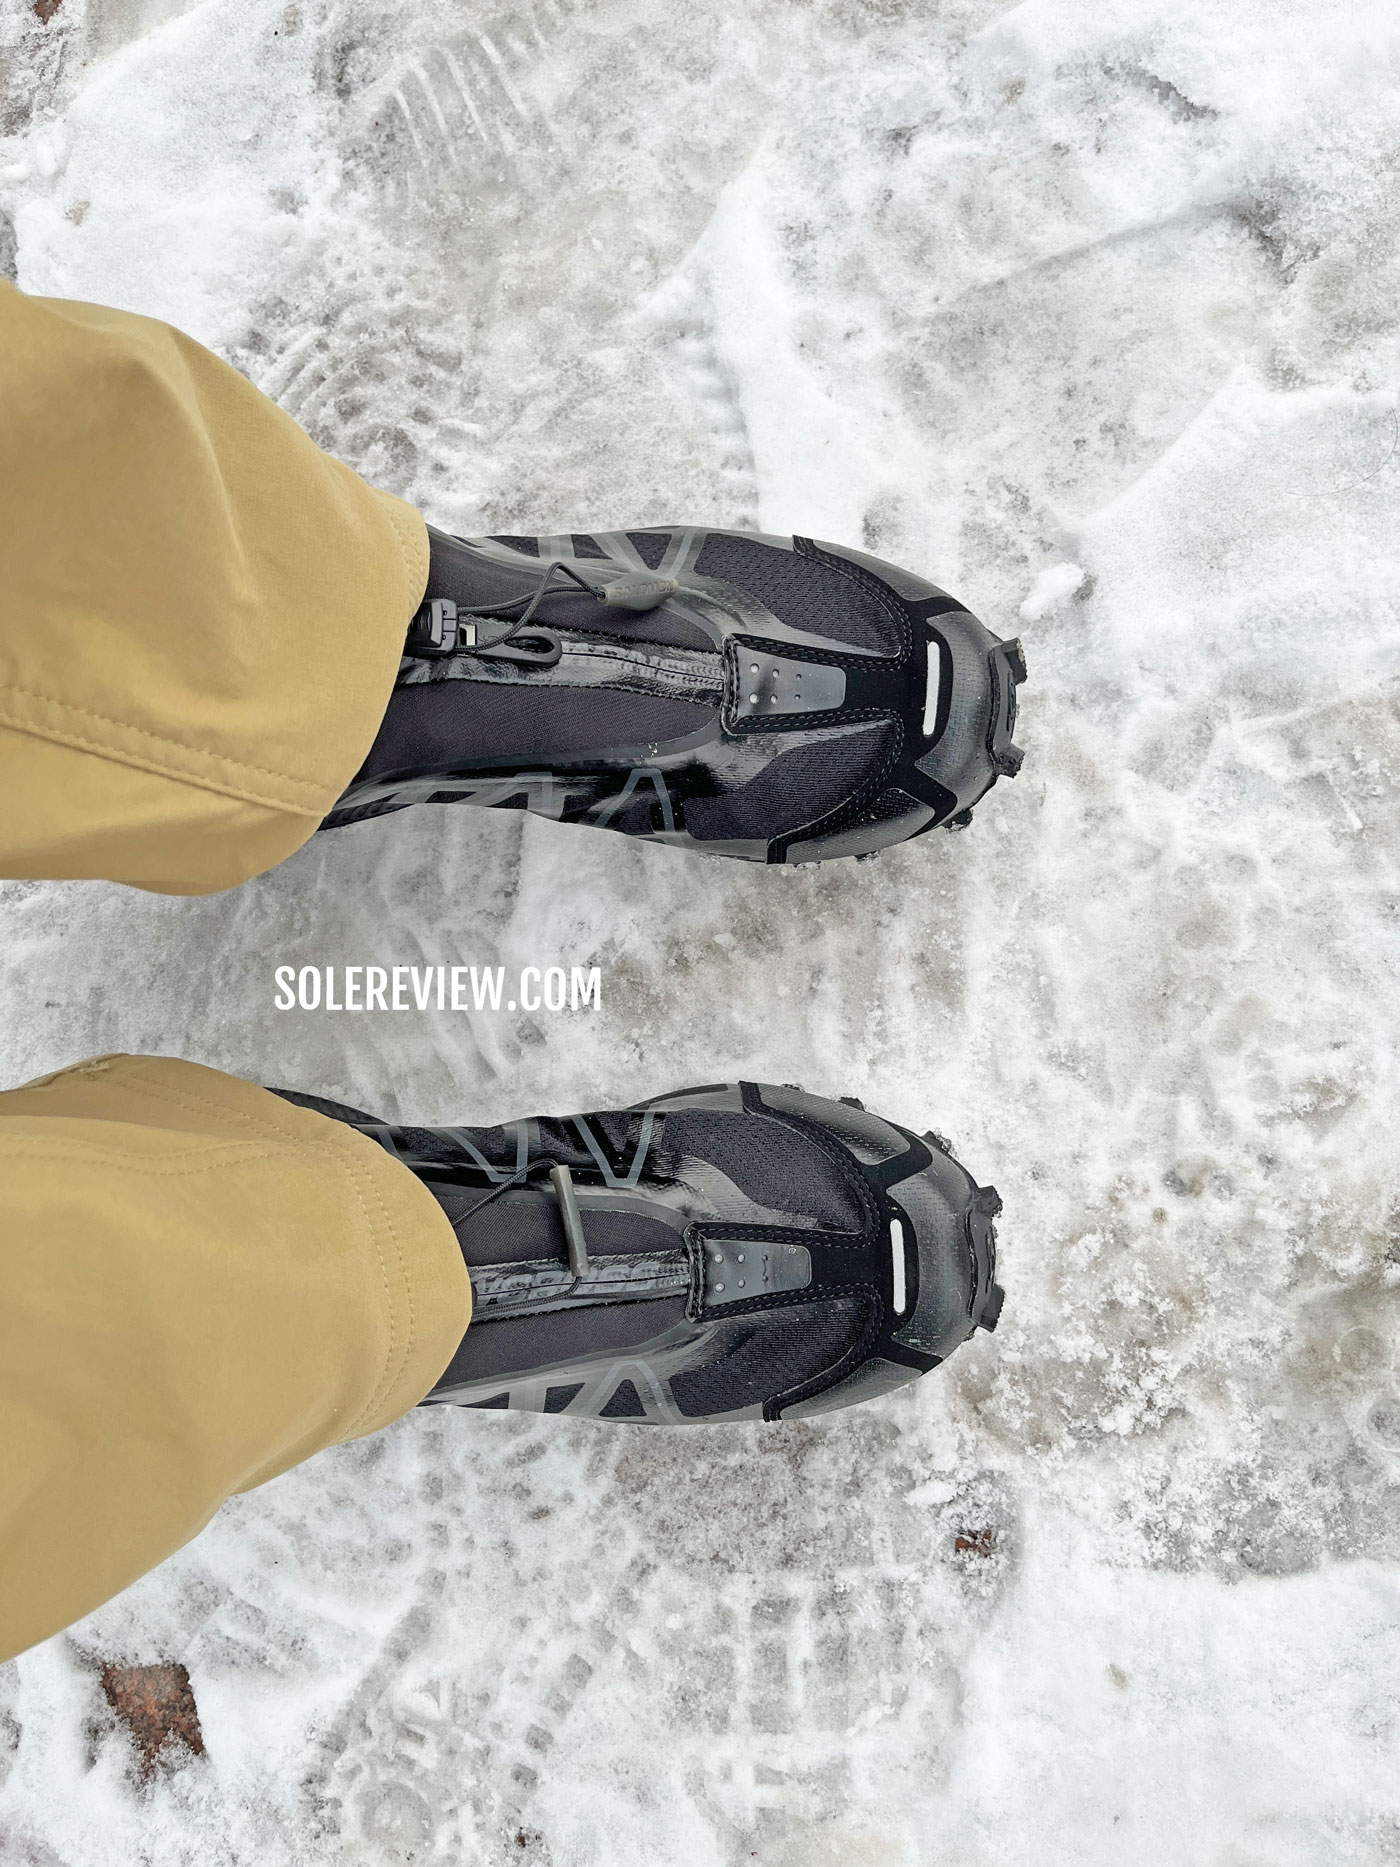 The Salomon Snowcross on ice.